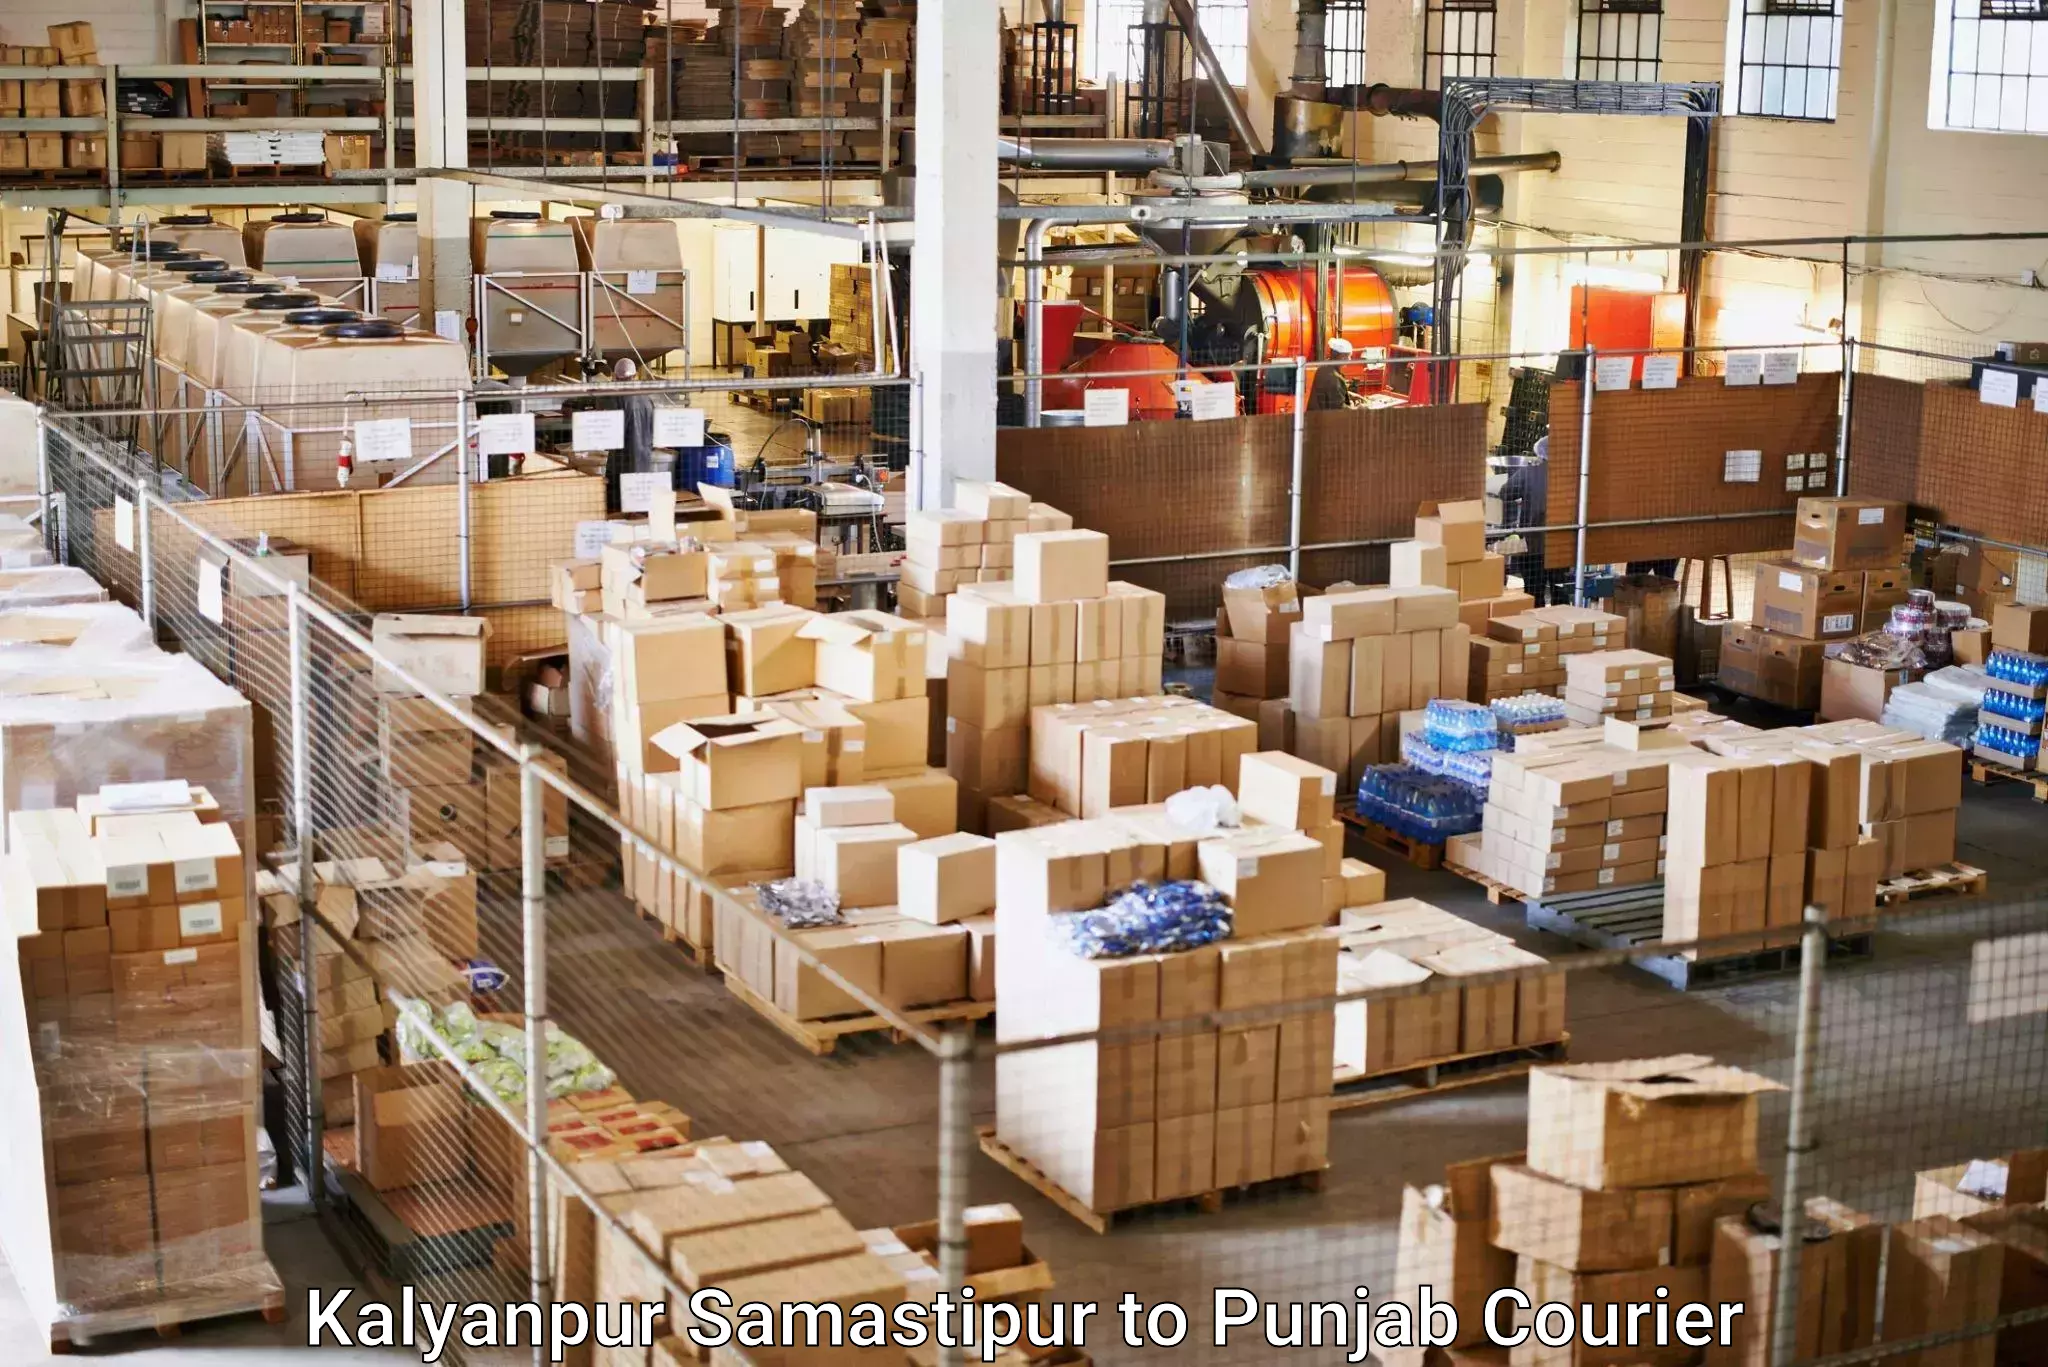 Cargo courier service Kalyanpur Samastipur to Punjab